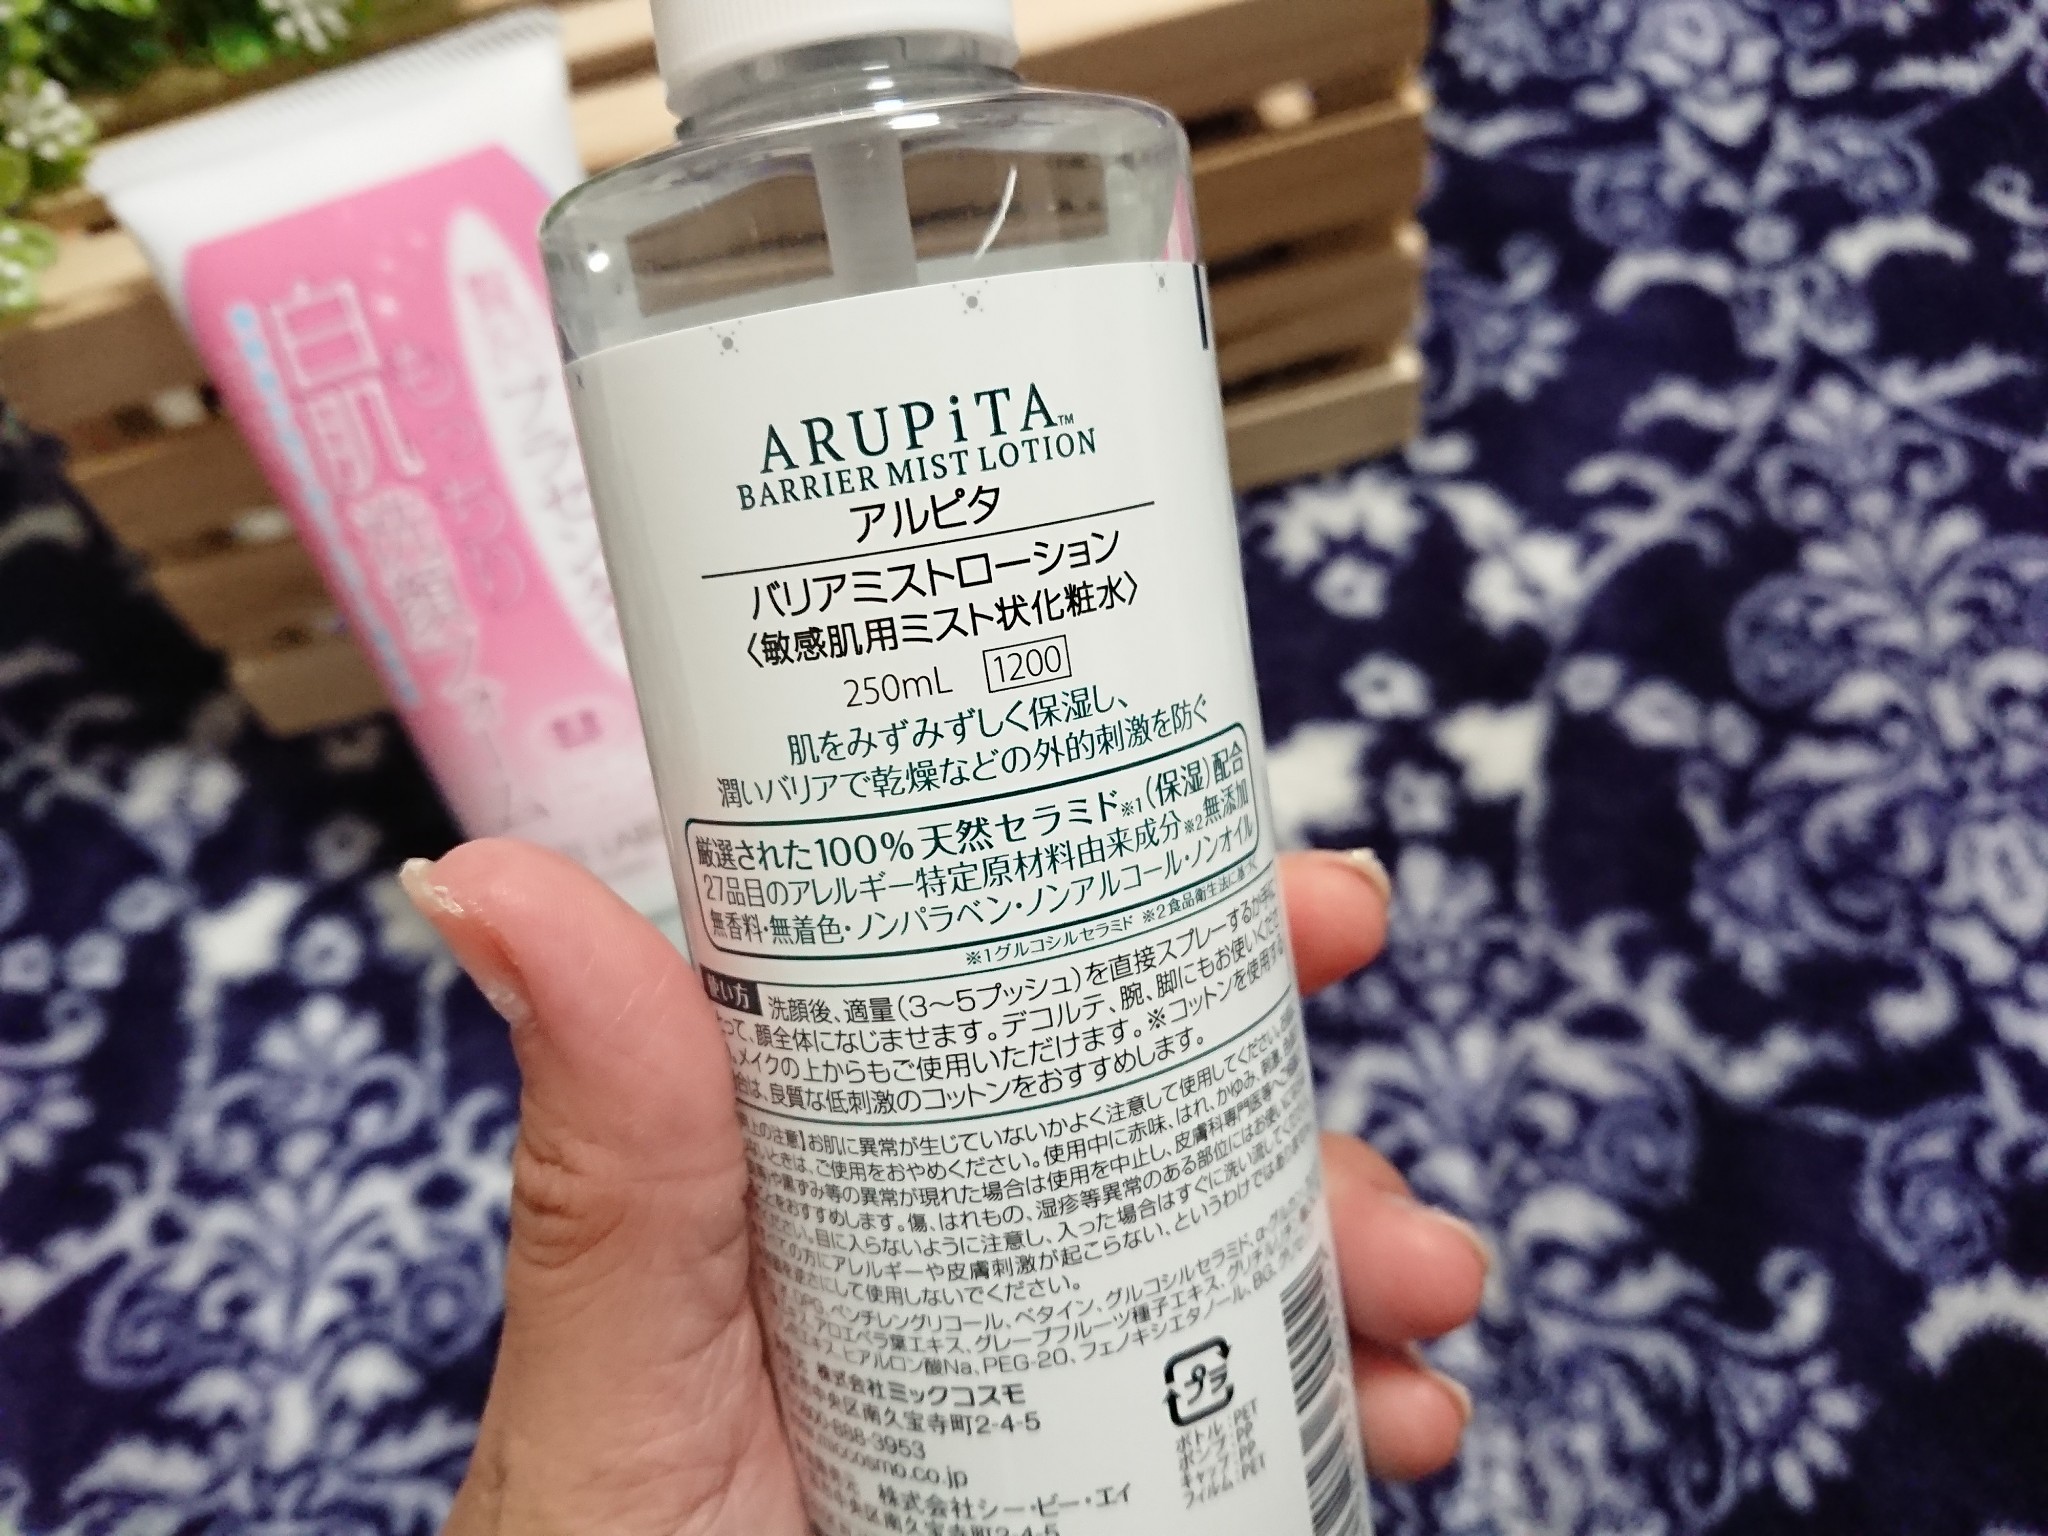 アルピタ / バリアミストローションの公式商品情報｜美容・化粧品情報